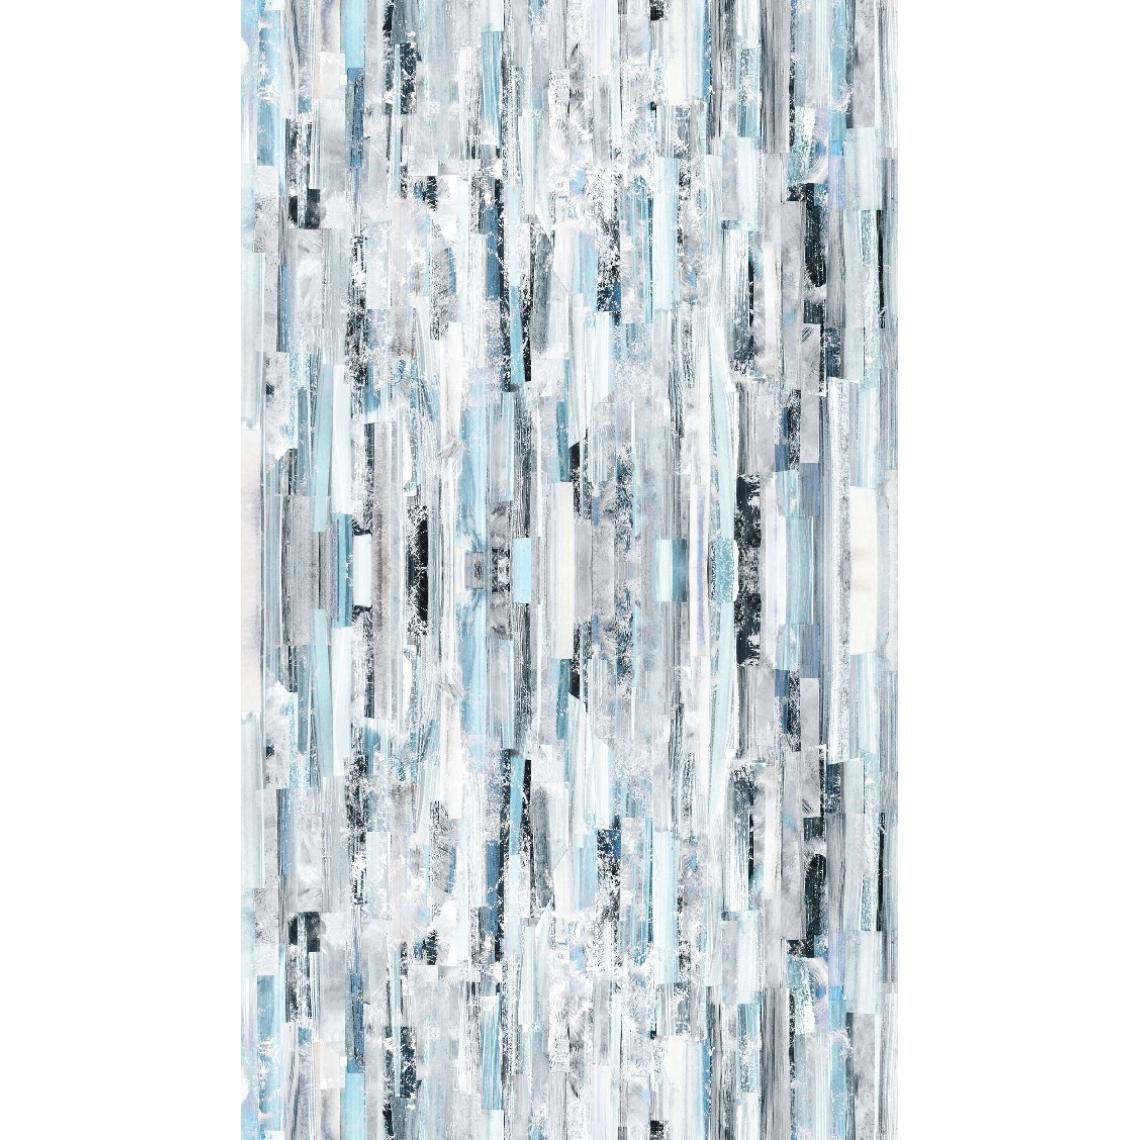 Homemania - HOMEMANIA Tapis Imprimé Blue Wood 1 - Géométrique - Décoration de Maison - Antidérapant - Pour Salon, séjour, chambre à coucher - Multicolore en Polyester, Coton, 80 x 120 cm - Tapis